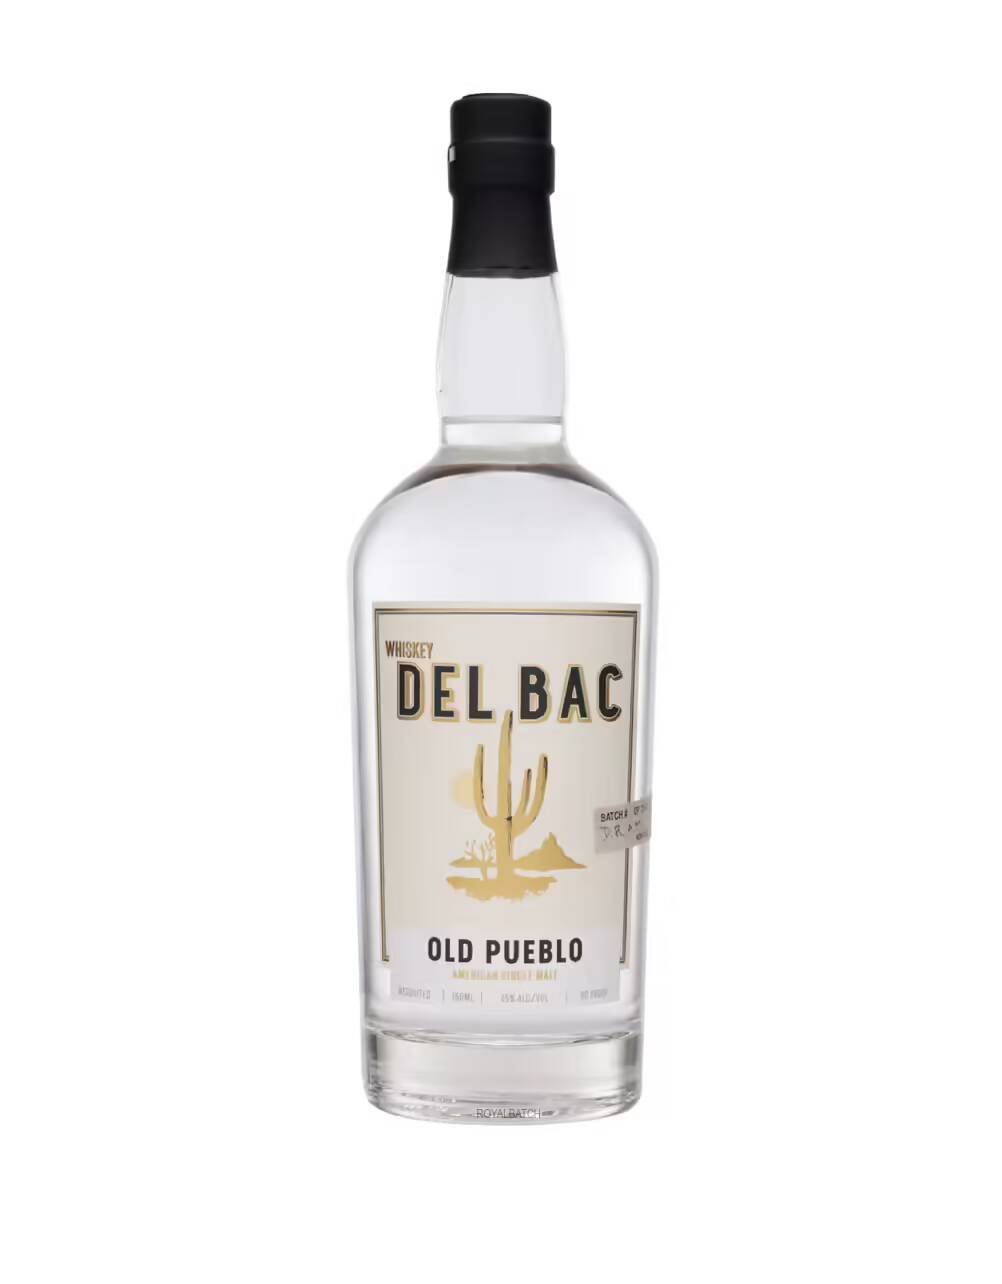 Del Bac Old Pueblo American Single Malt Whiskey